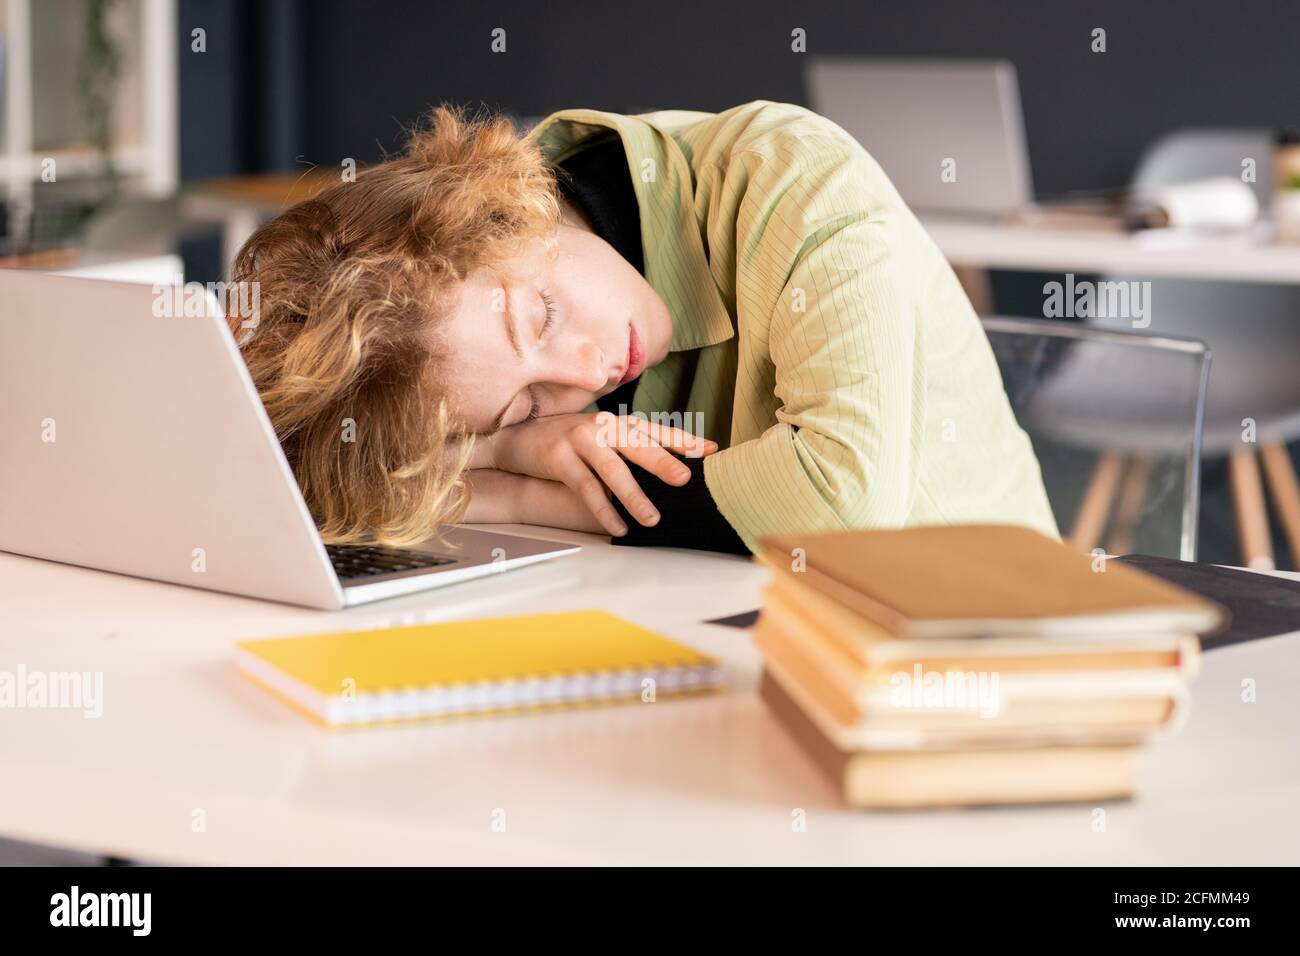 Junge erschöpfte Studentin oder Büromanagerin, die den Kopf aufrecht hält Hände Stockfoto